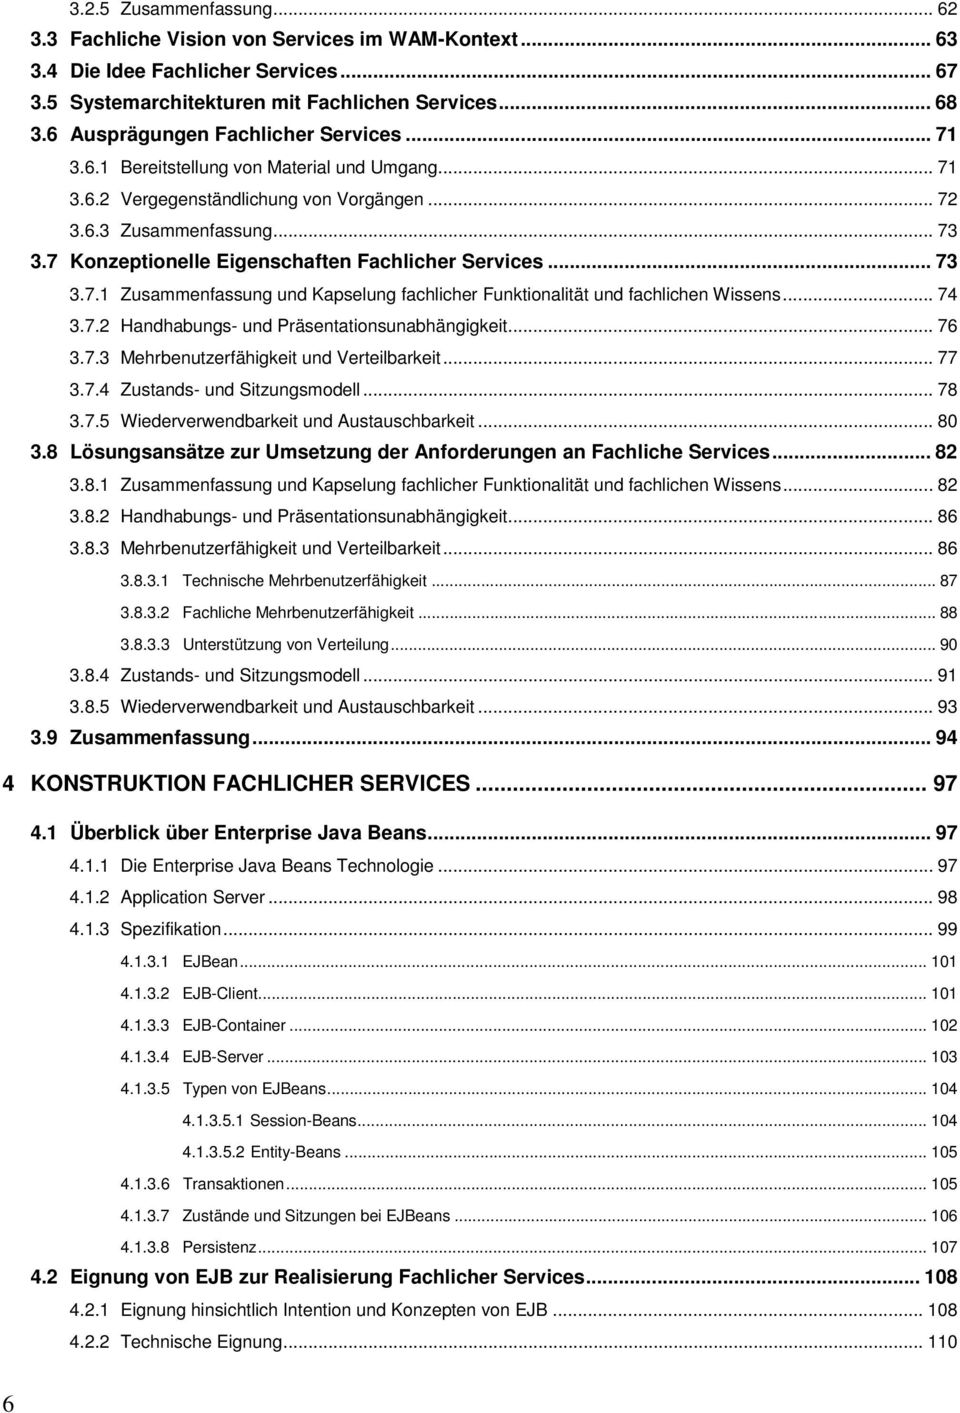 7 Konzeptionelle Eigenschaften Fachlicher Services... 73 3.7.1 Zusammenfassung und Kapselung fachlicher Funktionalität und fachlichen Wissens... 74 3.7.2 Handhabungs- und Präsentationsunabhängigkeit.